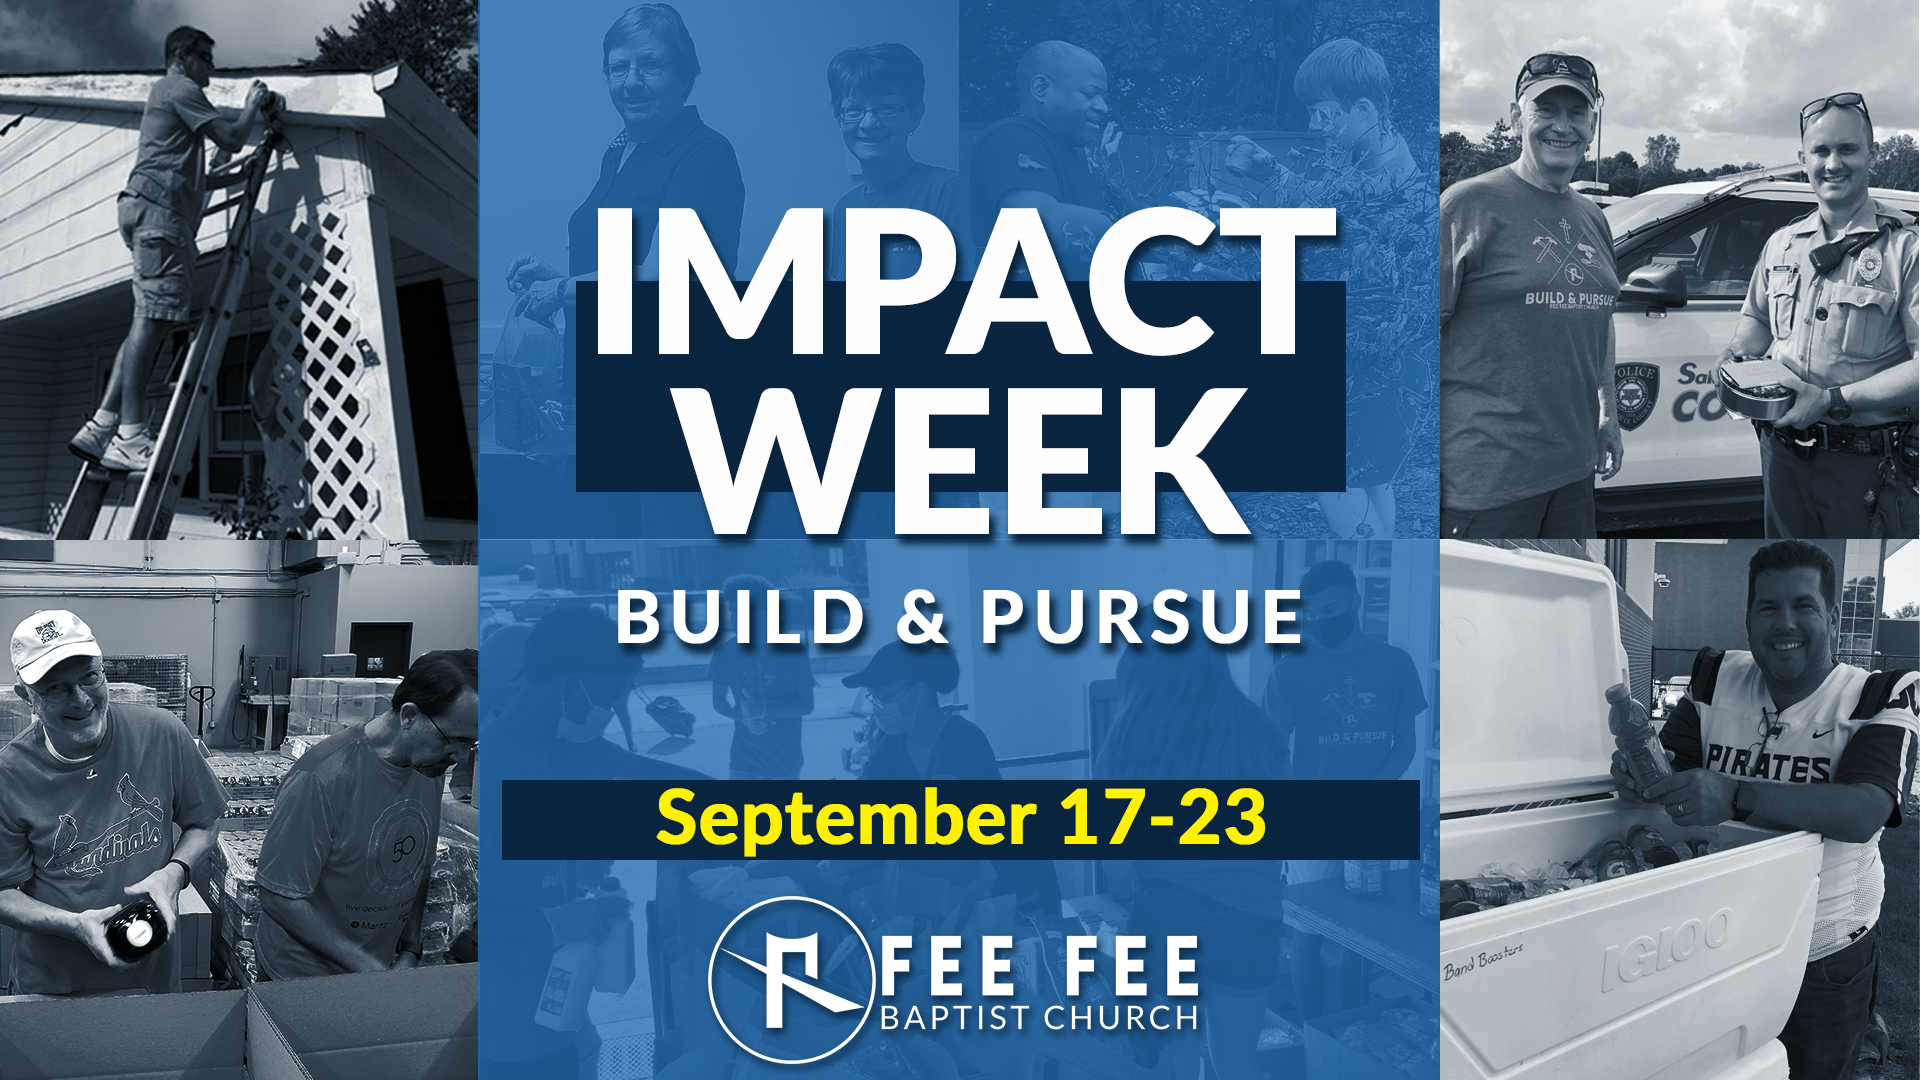 Impact Week 2023 Fee Fee Baptist Church